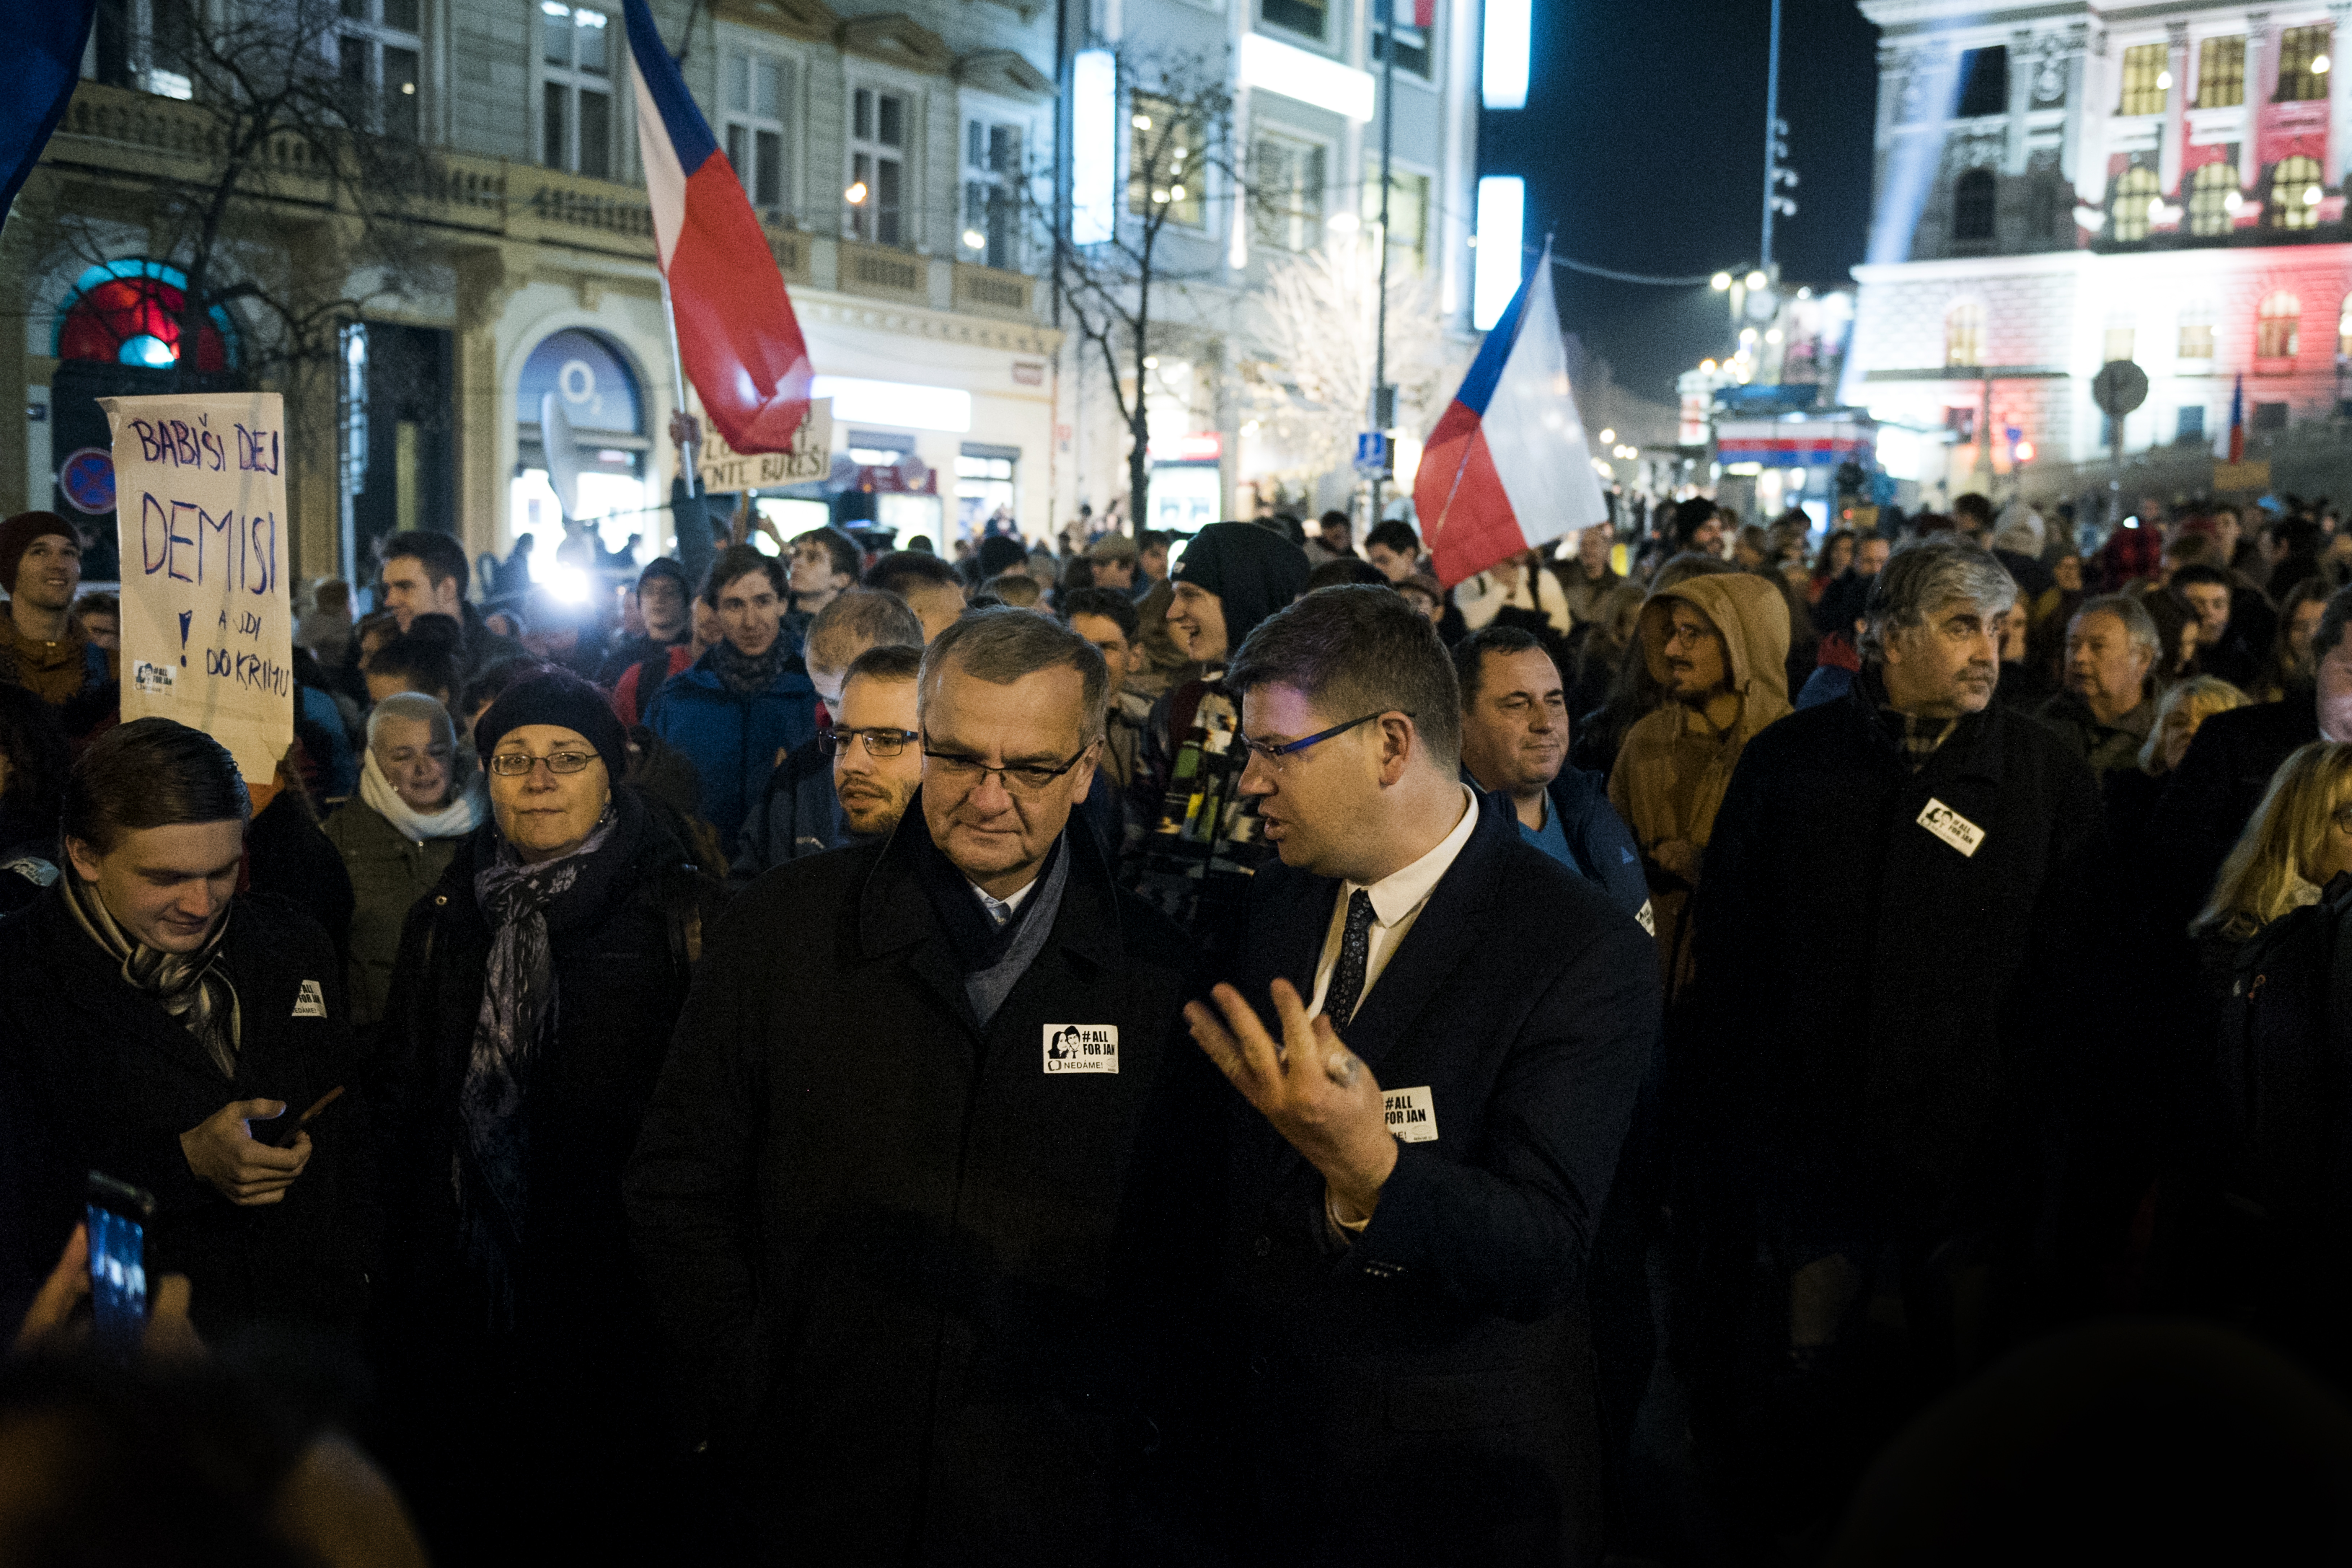 Z politiků na demonstraci dorazili např. předseda TOP 09 Jiří Pospíšil a jeho stranický kolega Miroslav Kalousek